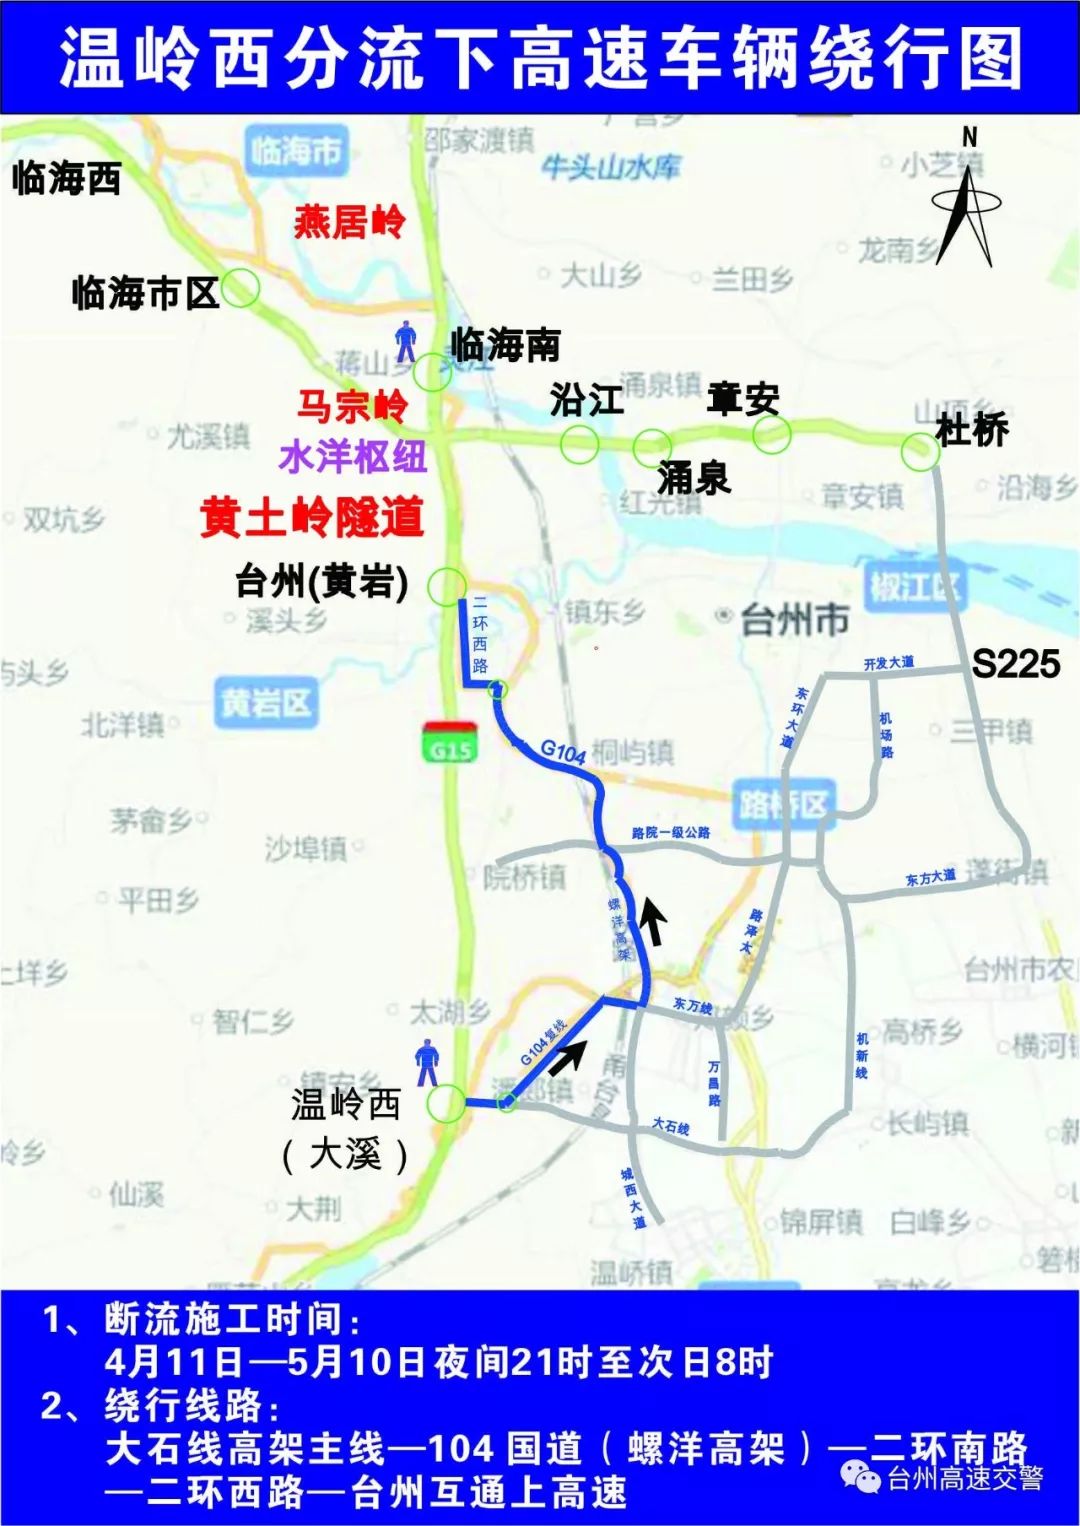 绕 行 路 线同时,宁波方向台州南,温岭西(大溪)两个点开展交替封道